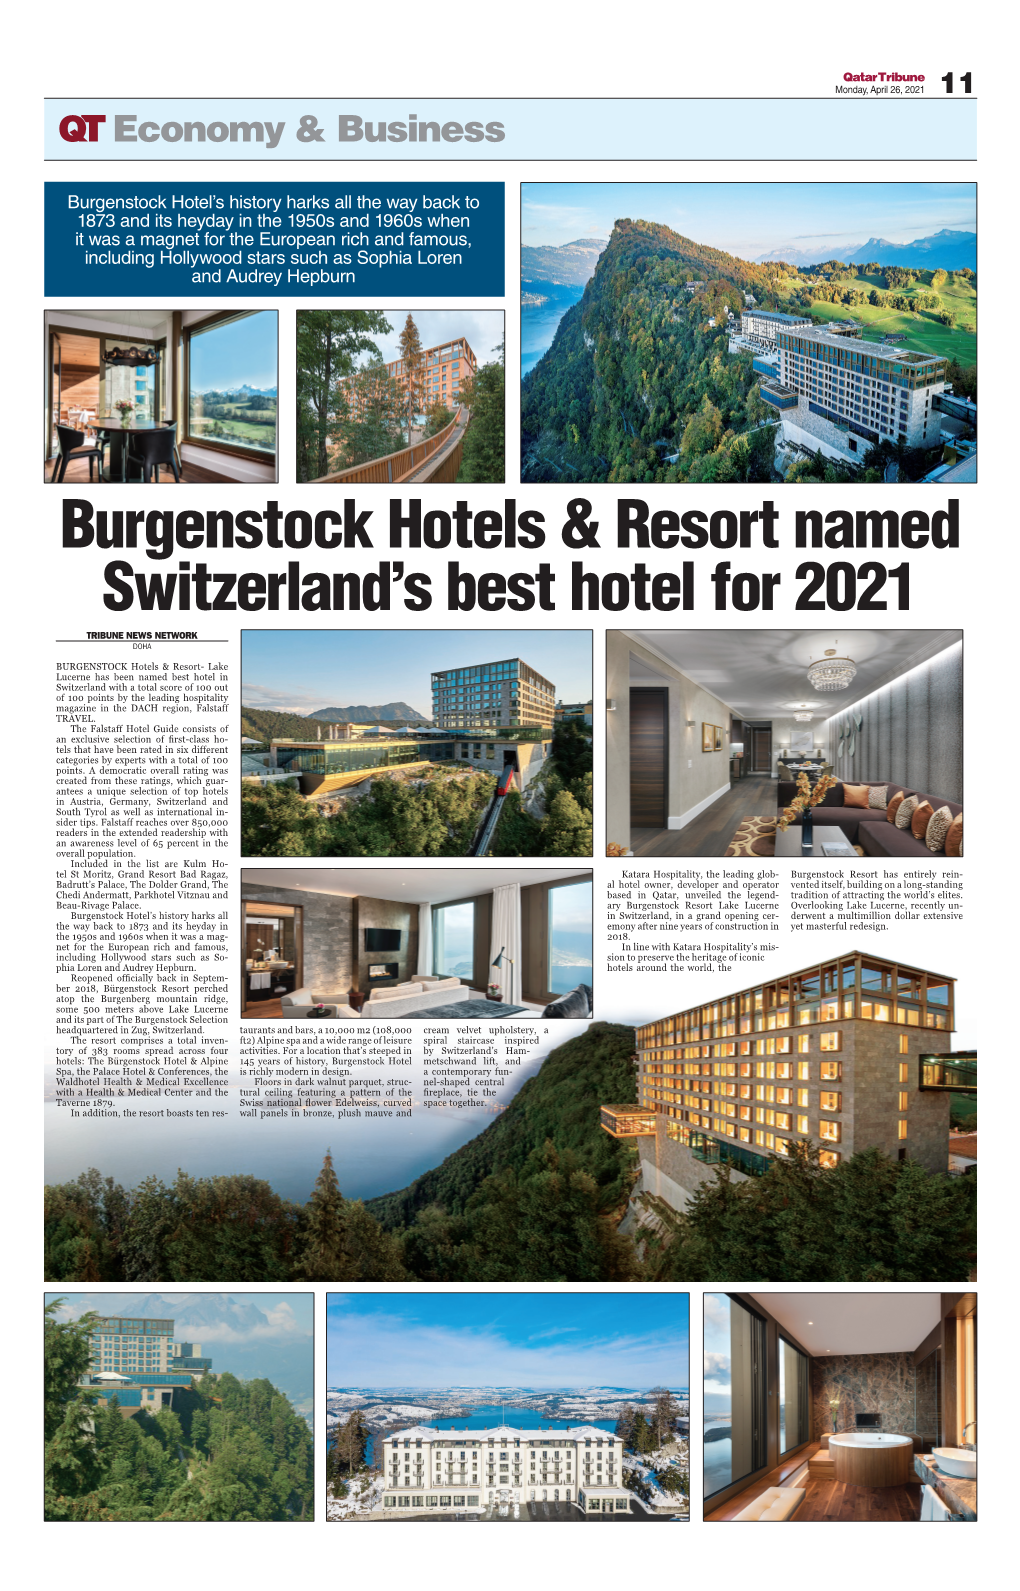 Burgenstock Hotels & Resort Named Switzerland's Best Hotel for 2021